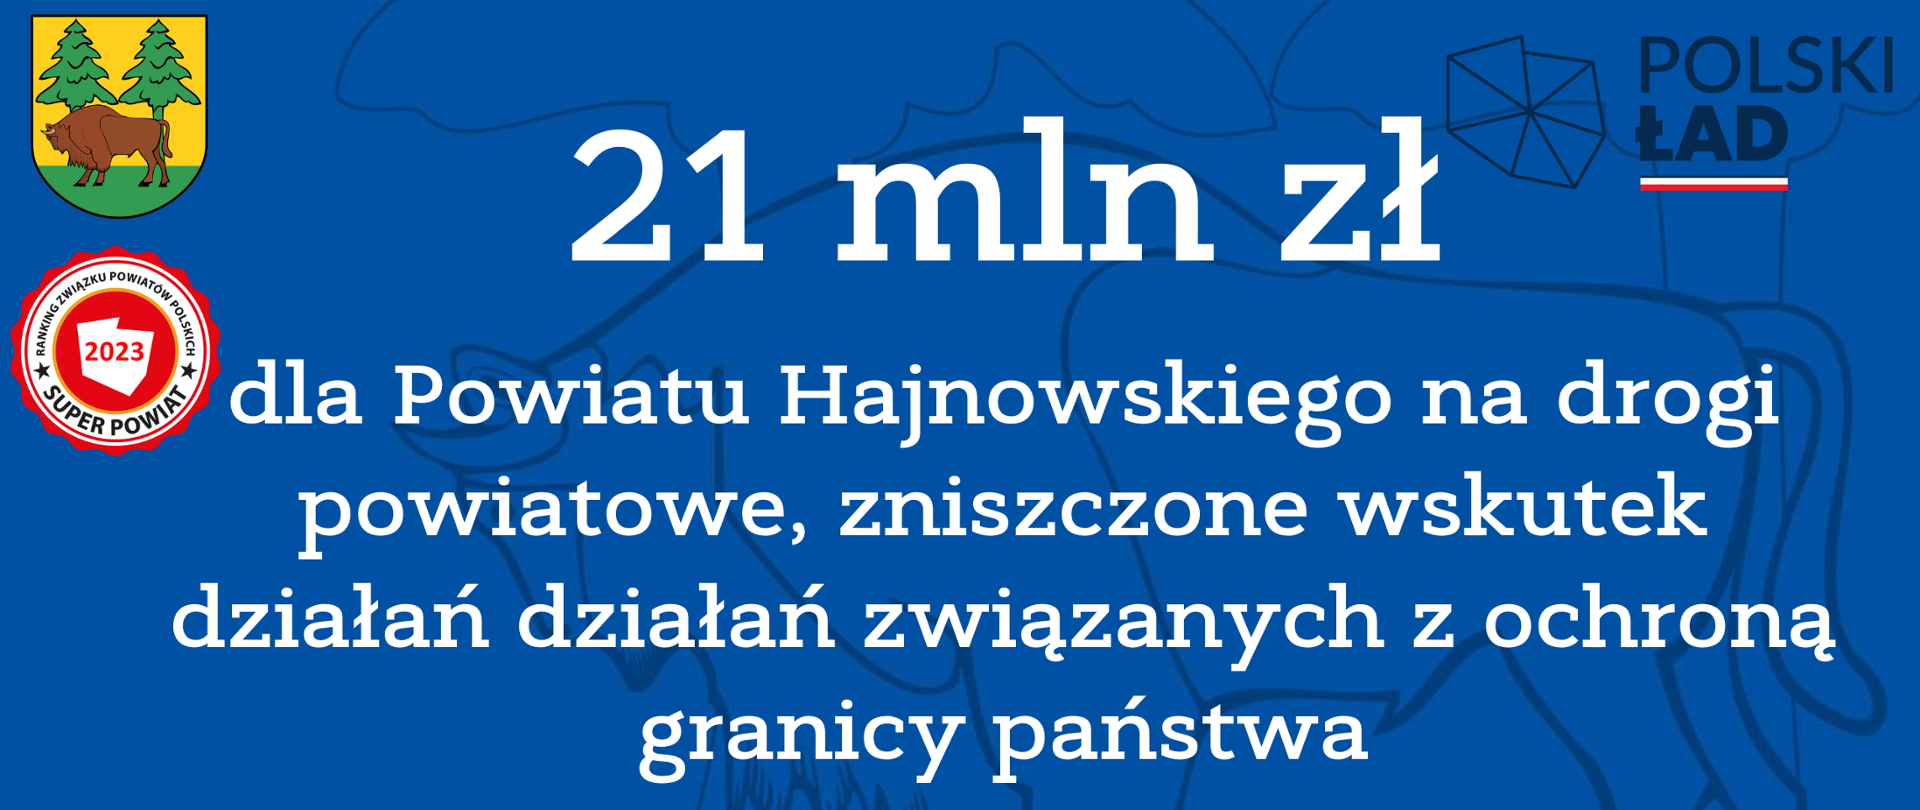 21 mln zł
dla Powiatu Hajnowskiego na drogi powiatowe, zniszczone wskutek działań działań związanych z ochroną granicy państwa 